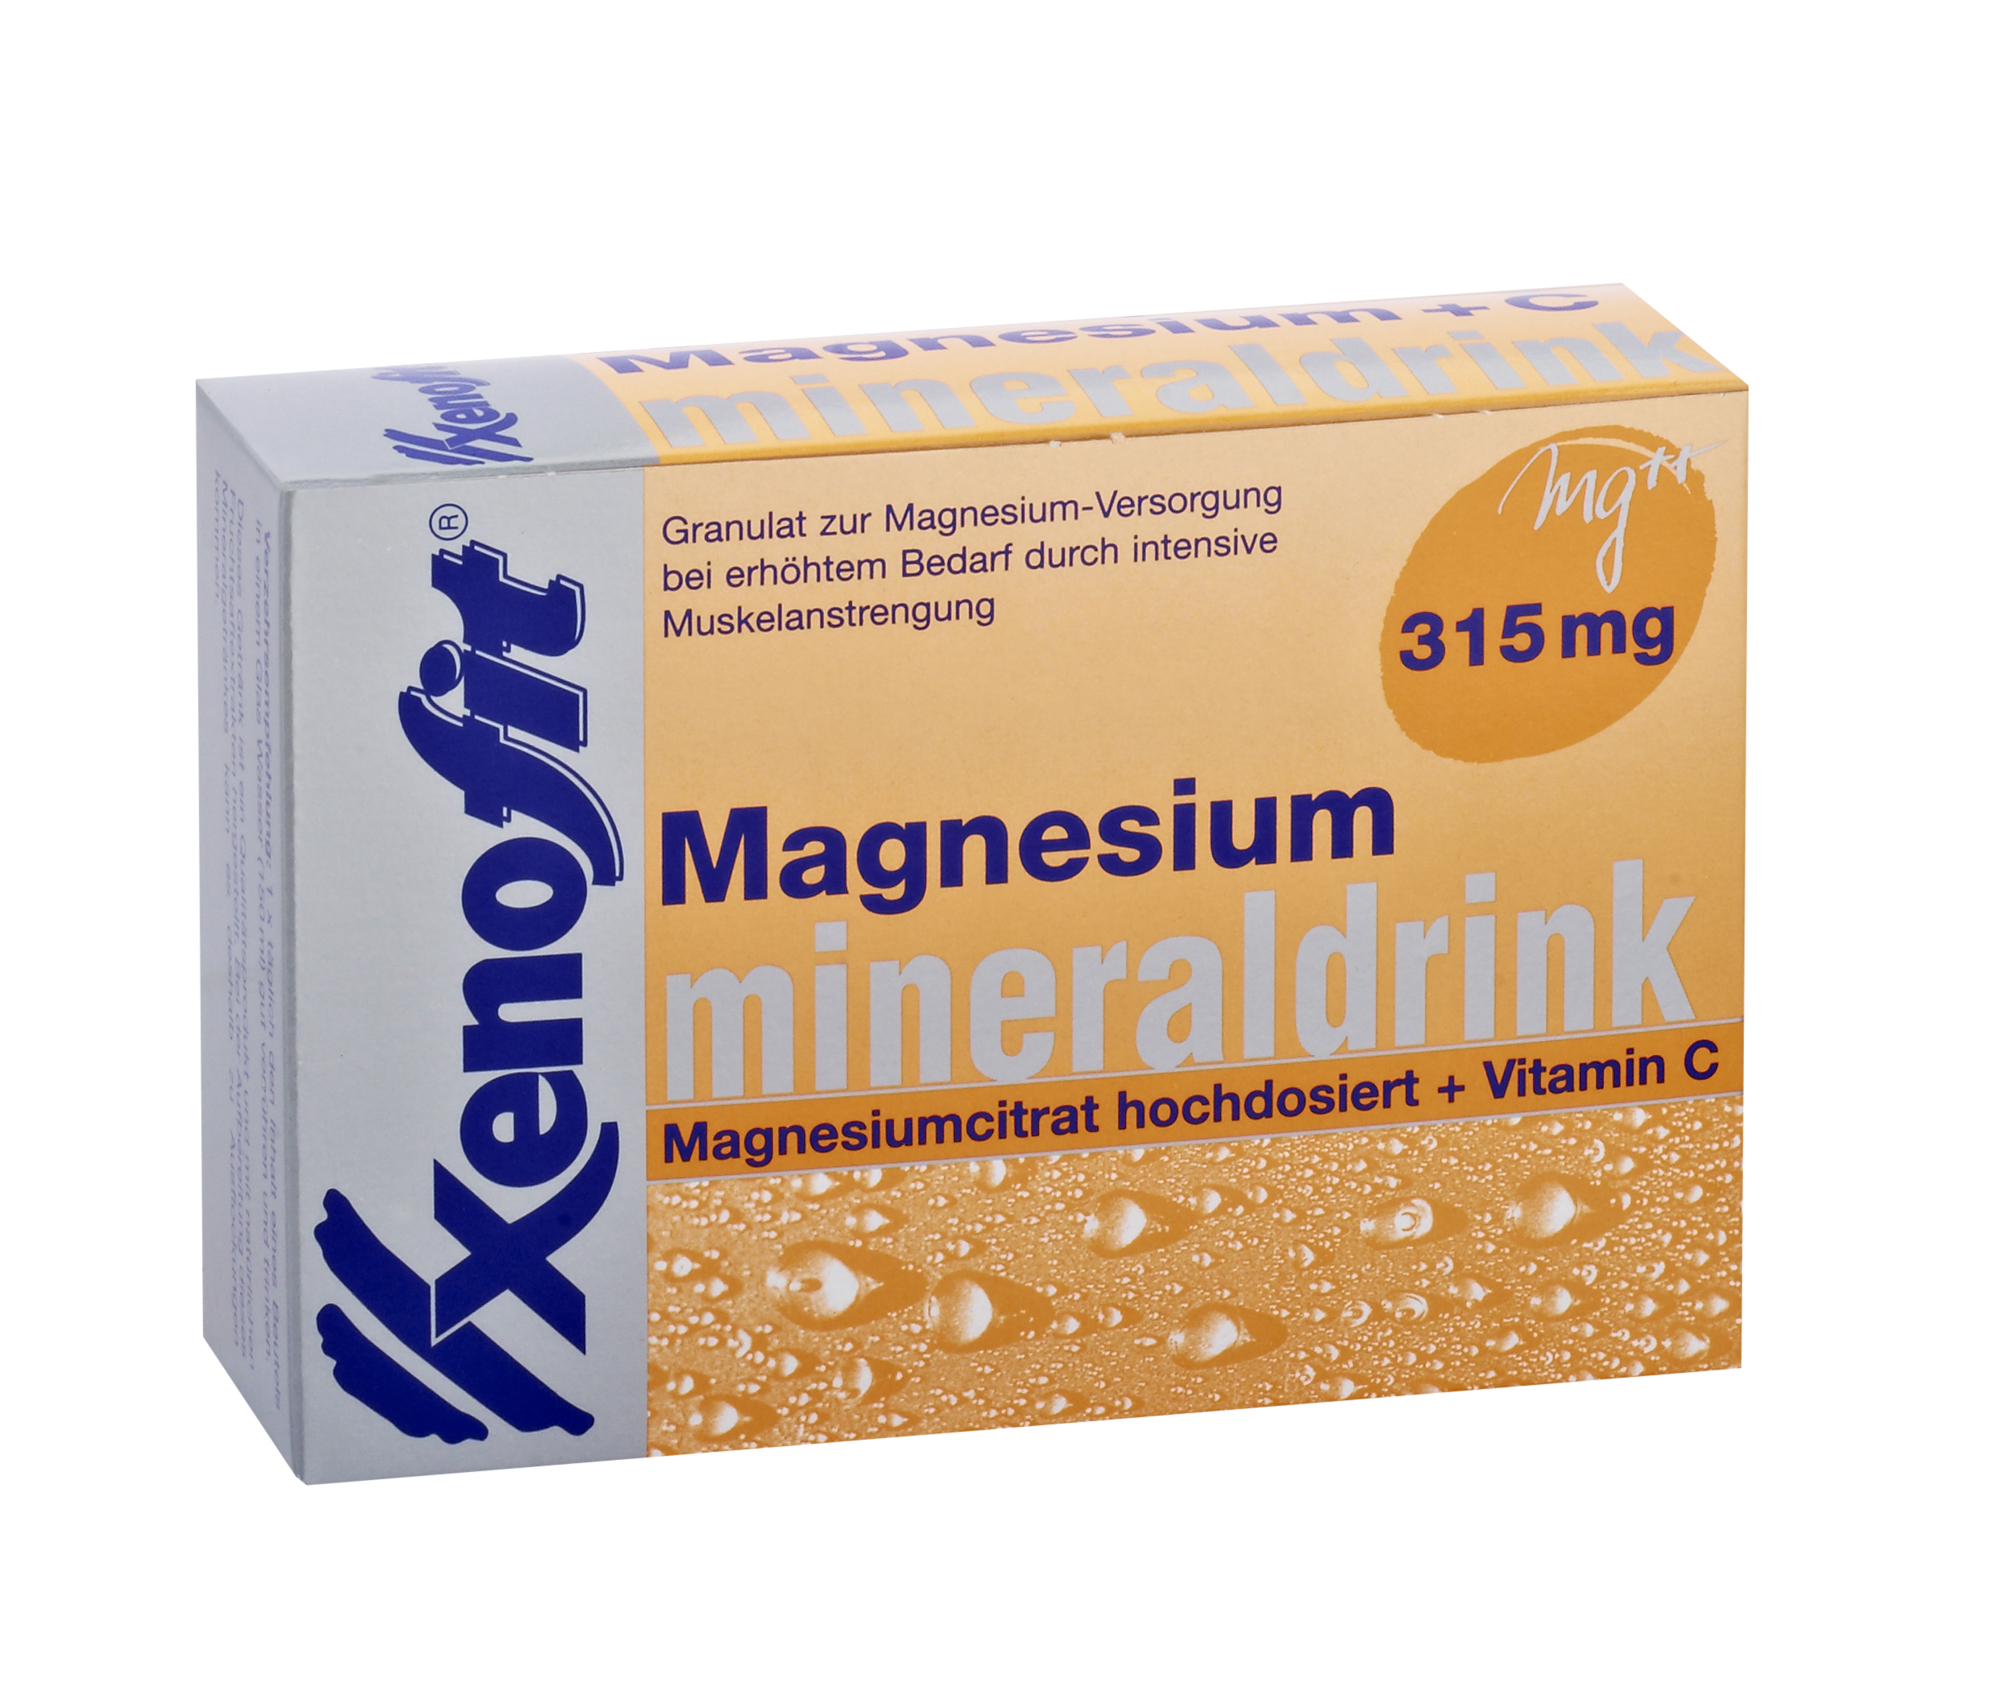 Xenofit Magnesium + Vitamin C Mineraldrink